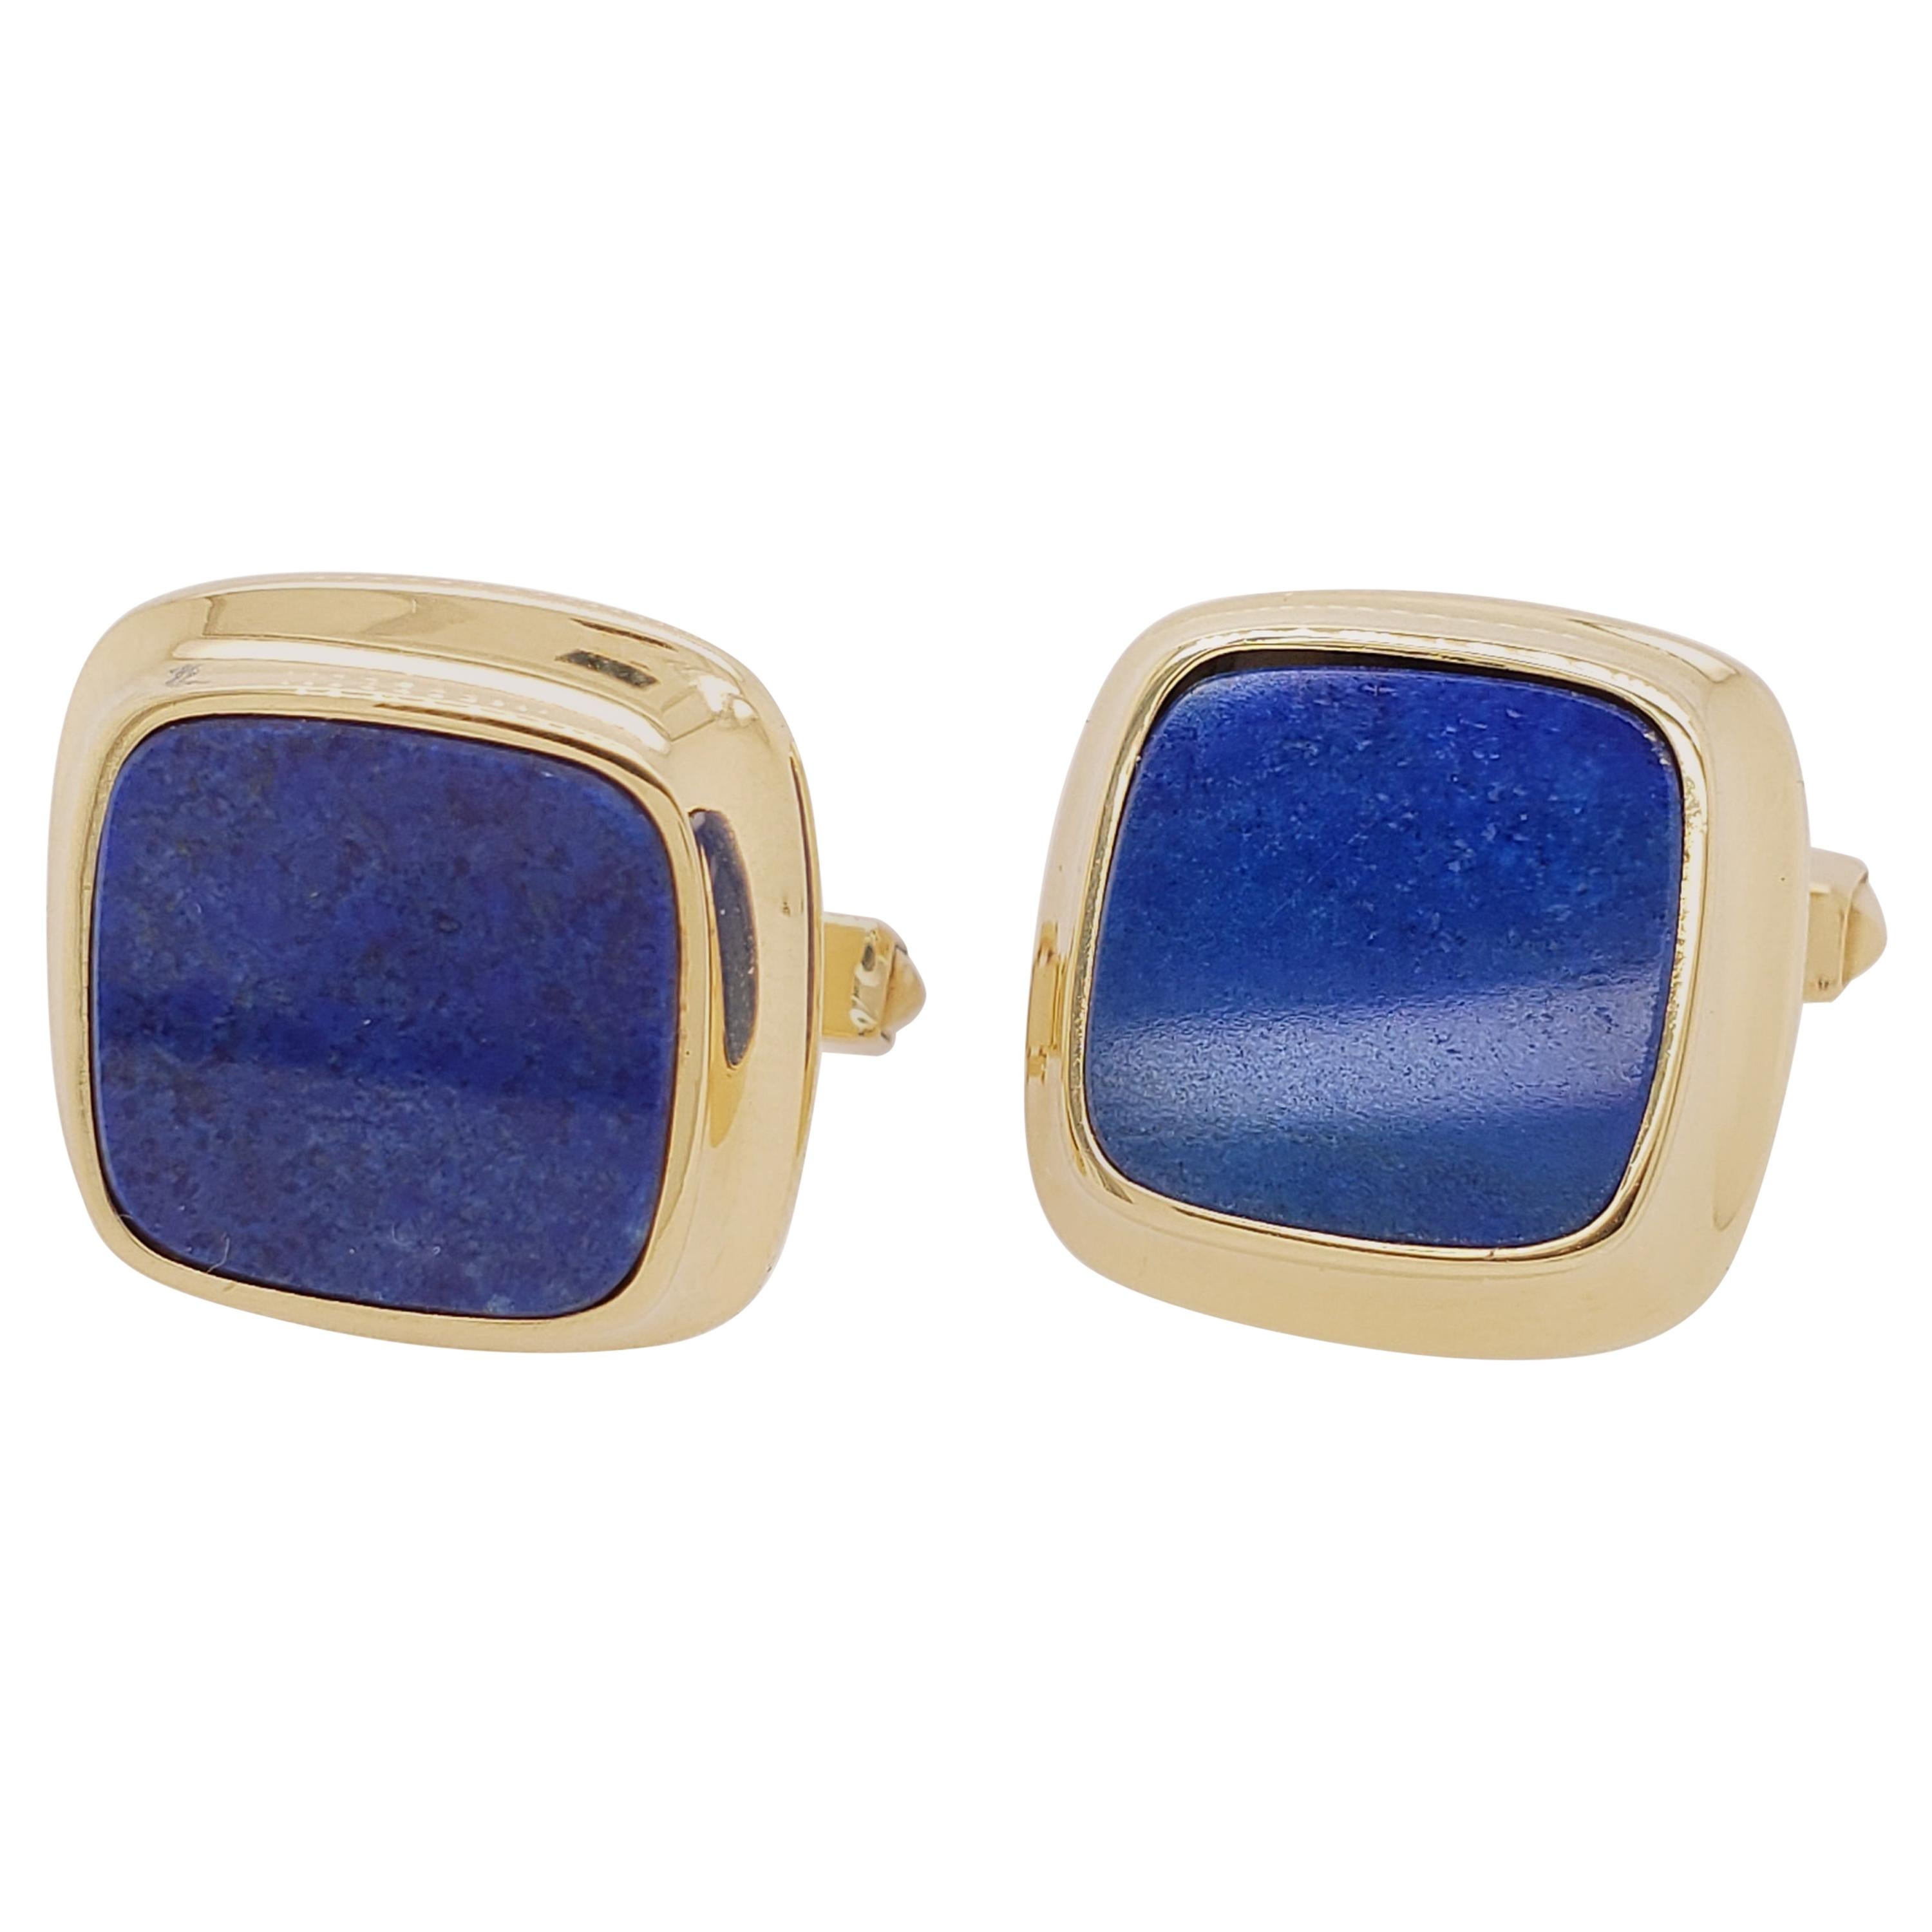 Cartier Gold and Lapis Lazuli Cufflinks